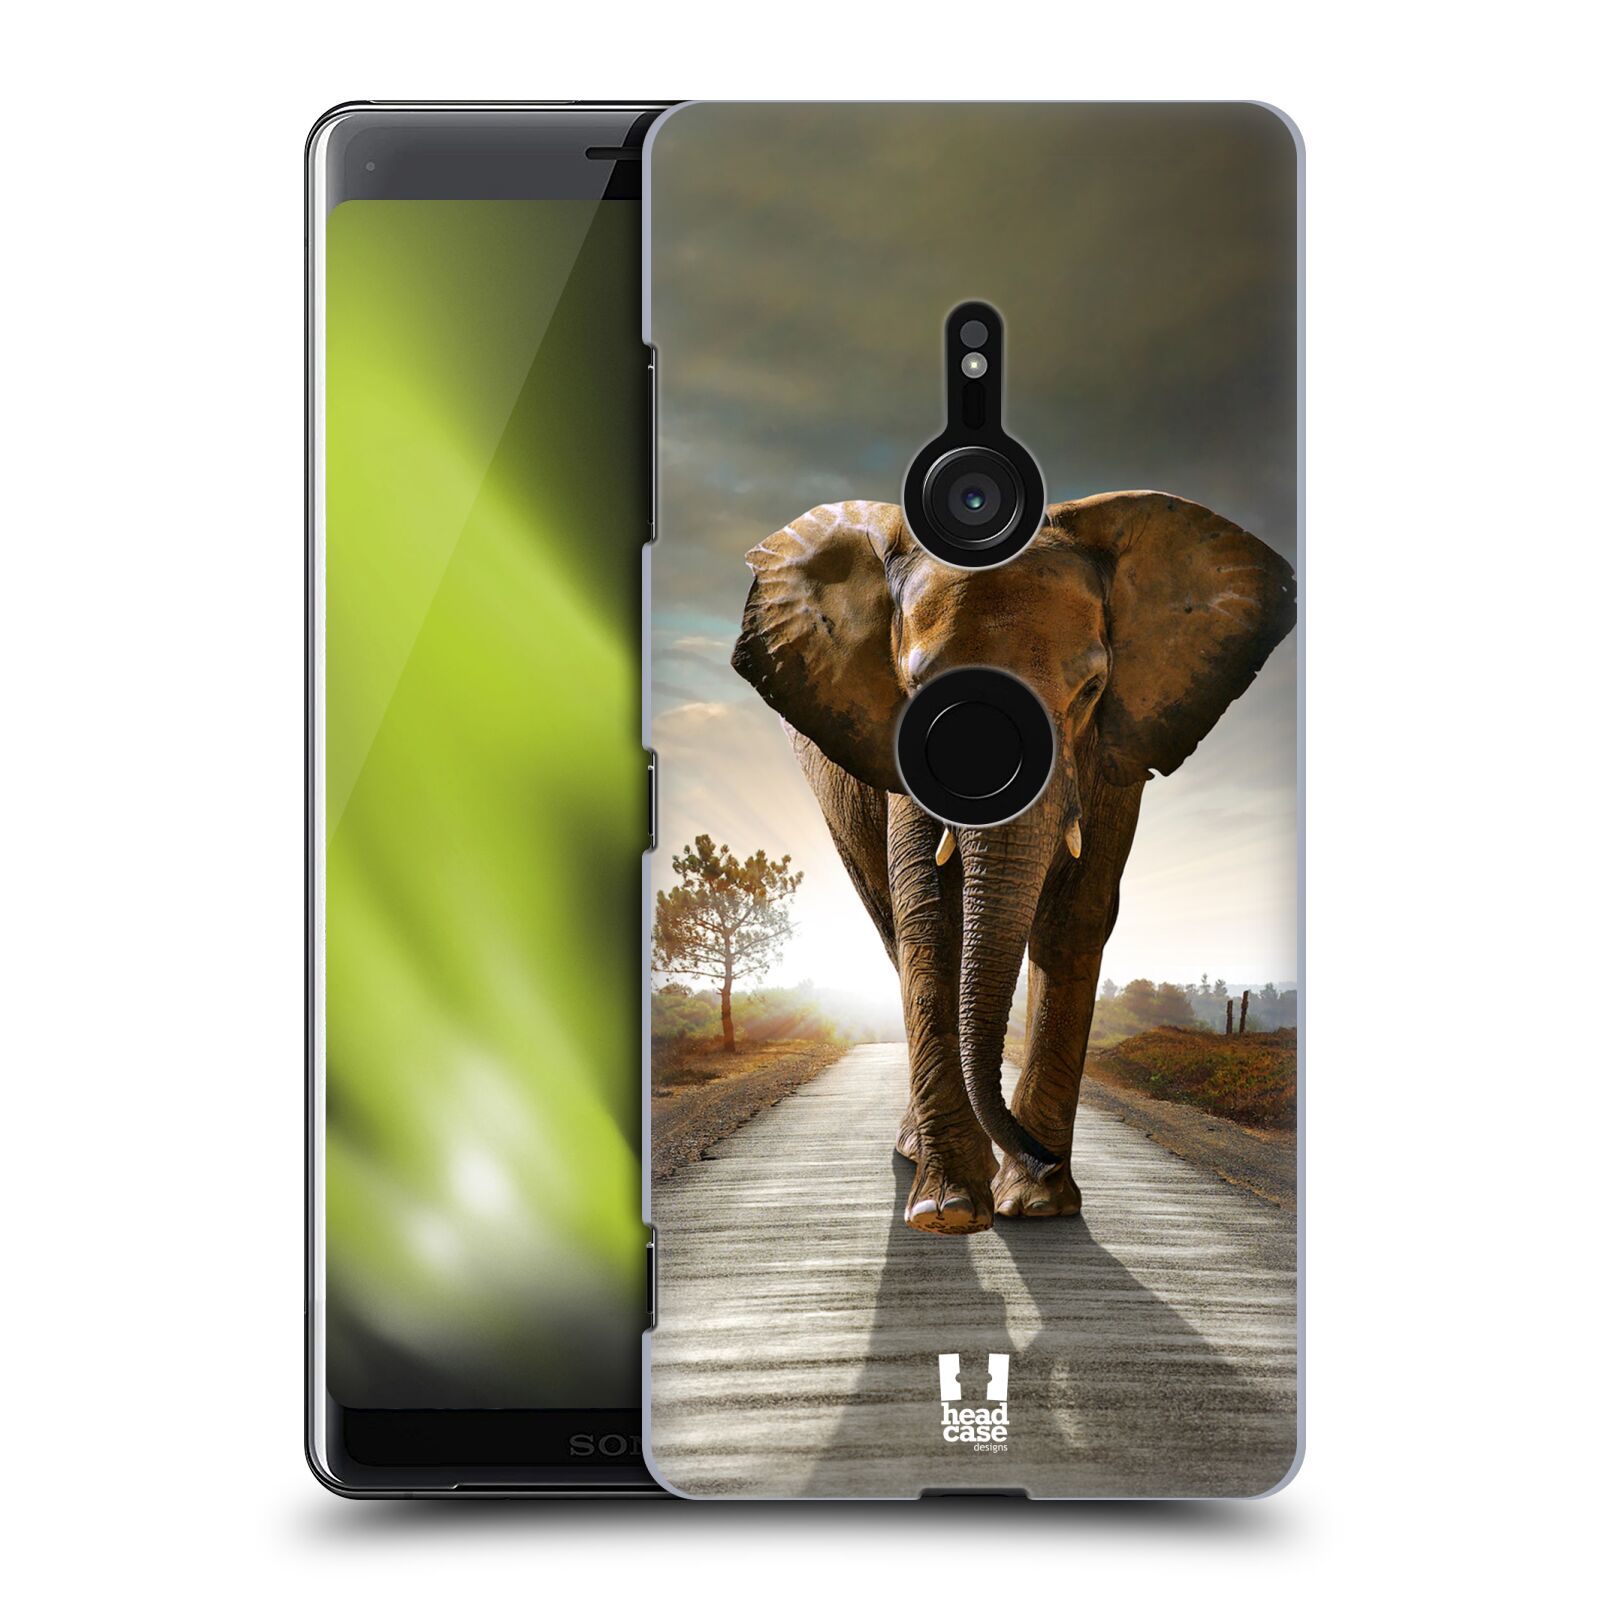 Zadní obal pro mobil Sony Xperia XZ3 - HEAD CASE - Svět zvířat kráčející slon